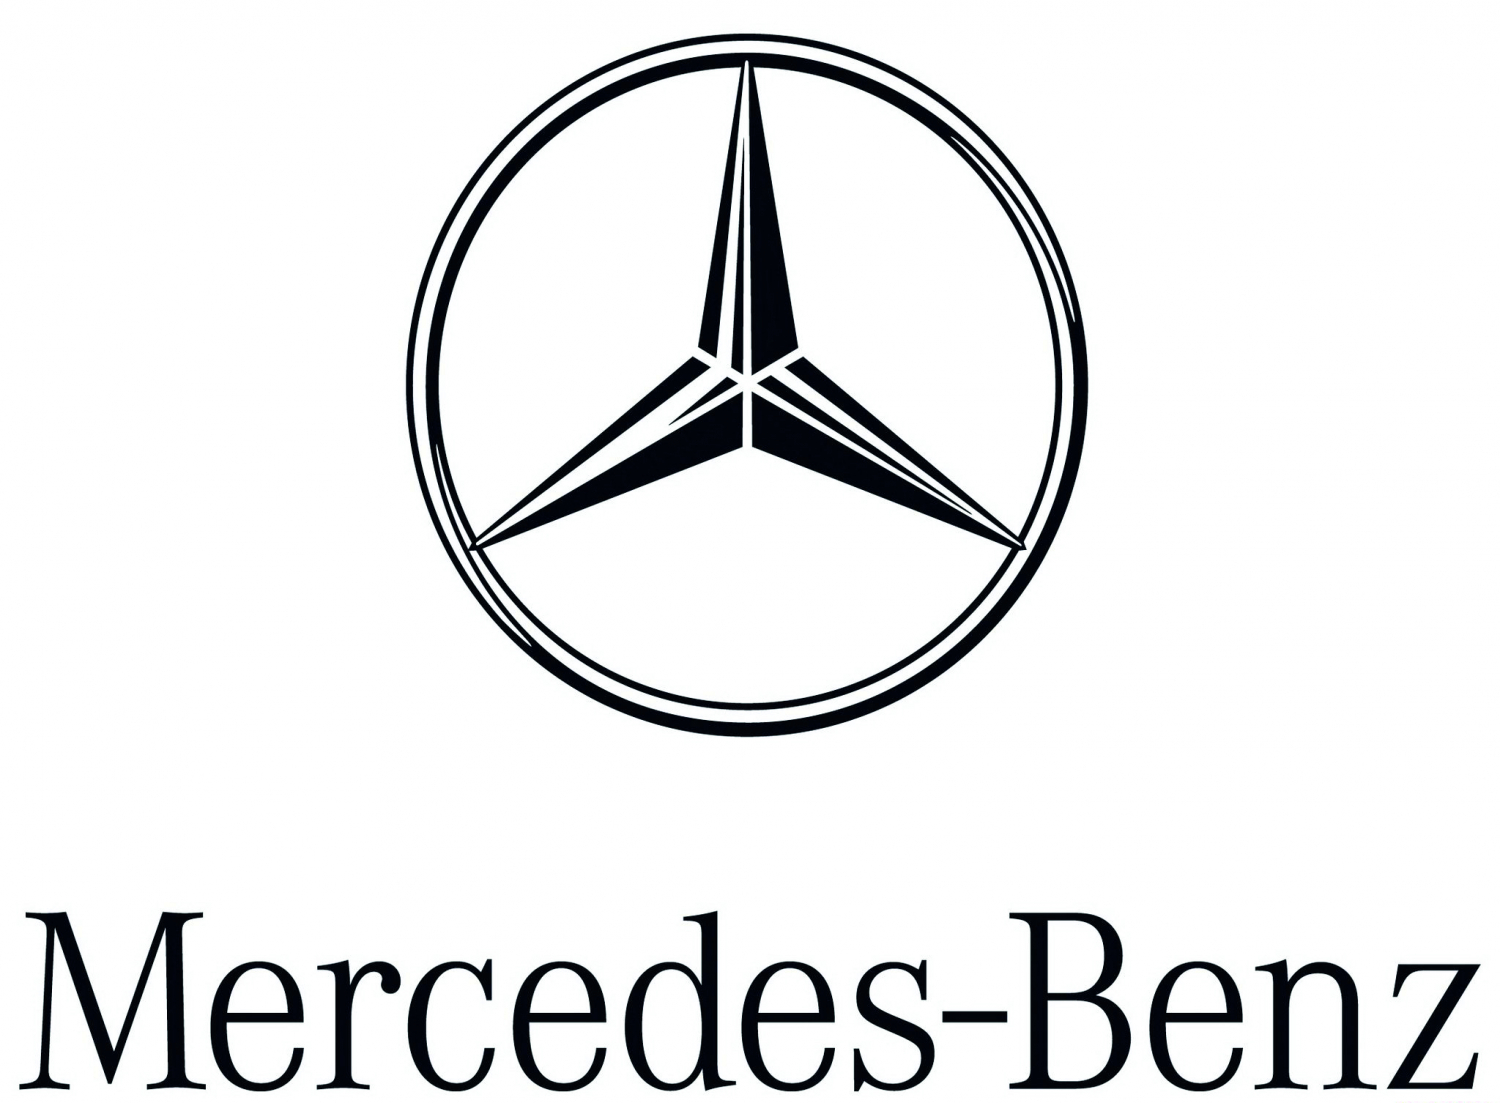 Mersedes-Benz